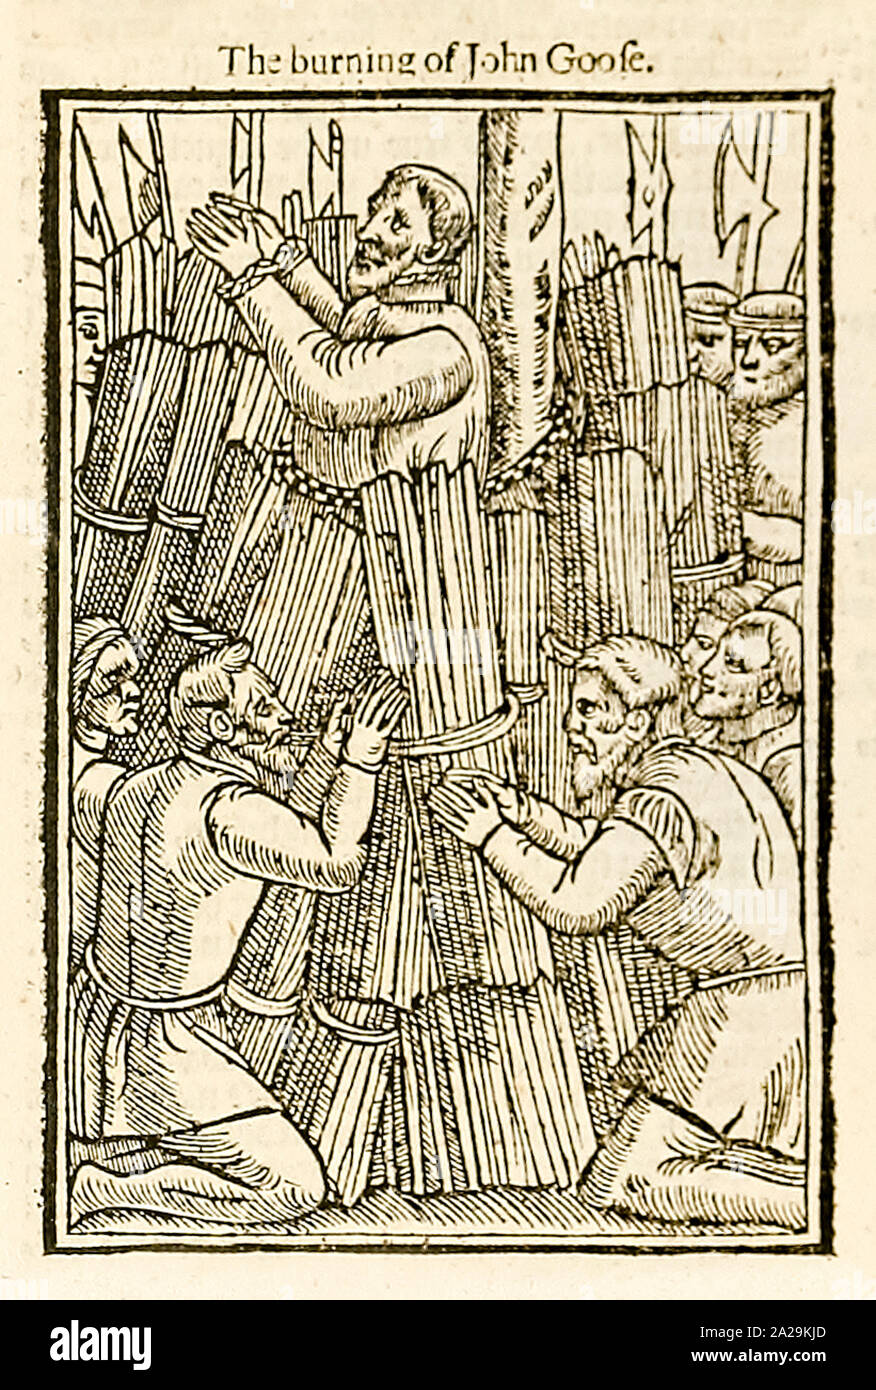 Il taglio di legno «The Burning of John Goofe», raffigurante il suo martirio, è stato bruciato nella torretta per eresia a Tower Hill nel 1473 dopo essere stato alimentato dallo sceriffo. Fotografia di una xilografia tratta da un'edizione del 1631 di Foxe's Book of Martyrs di John Foxe (1516-1587) pubblicata per la prima volta nel 1563. Credito: Collezione privata / AF fotografie Foto Stock